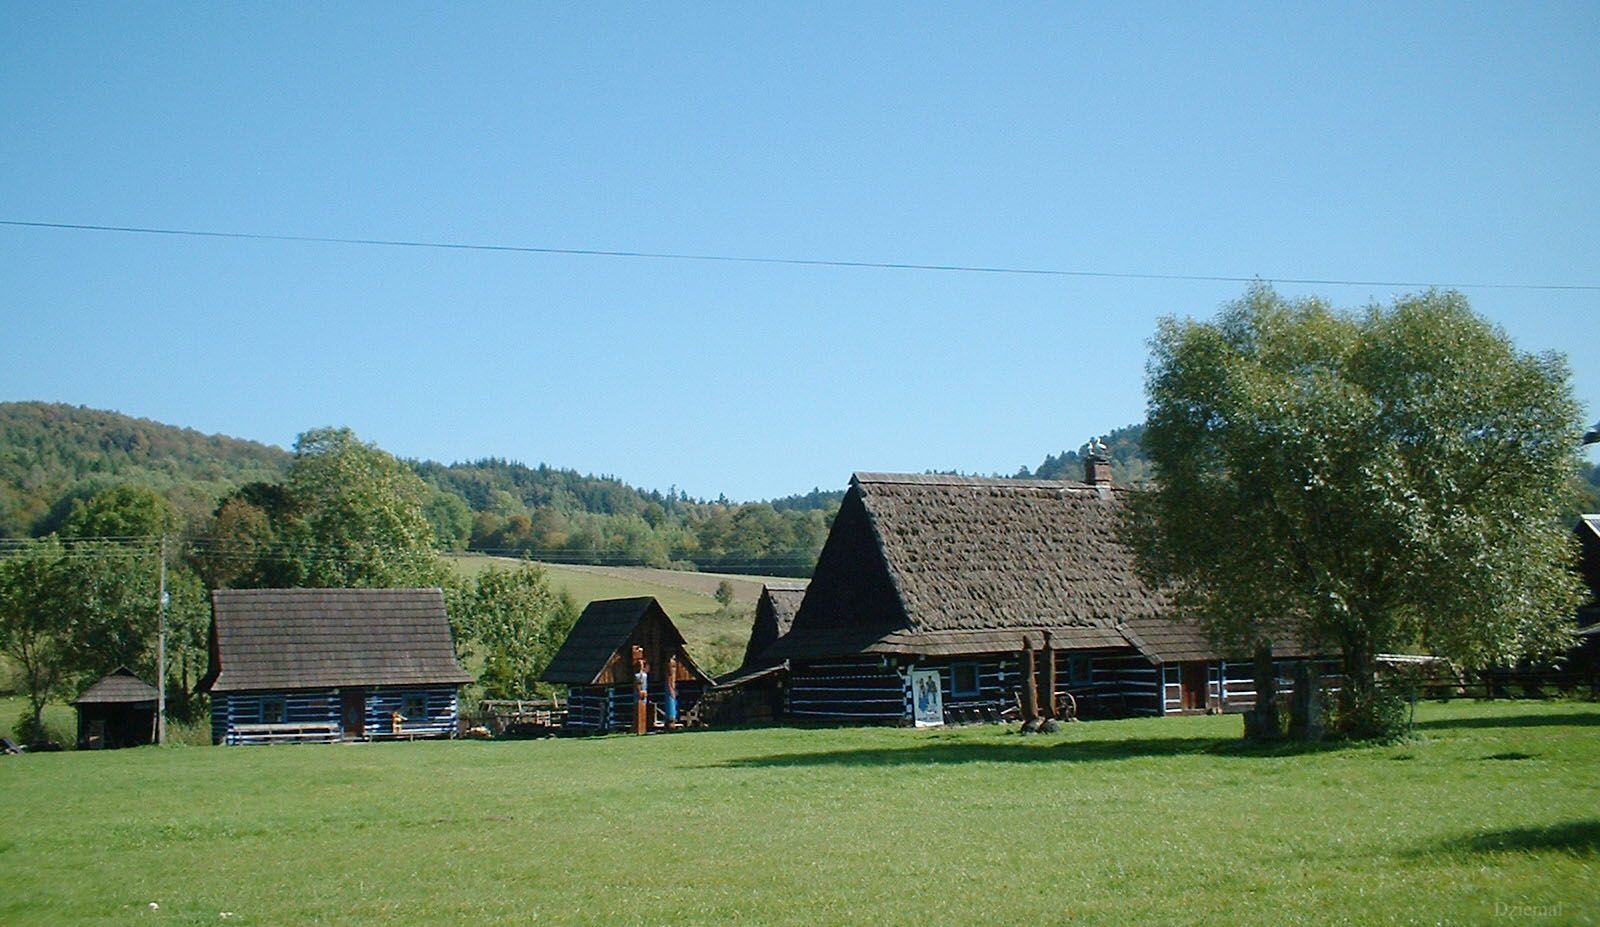 Lemki's cottages in Zyndranowa